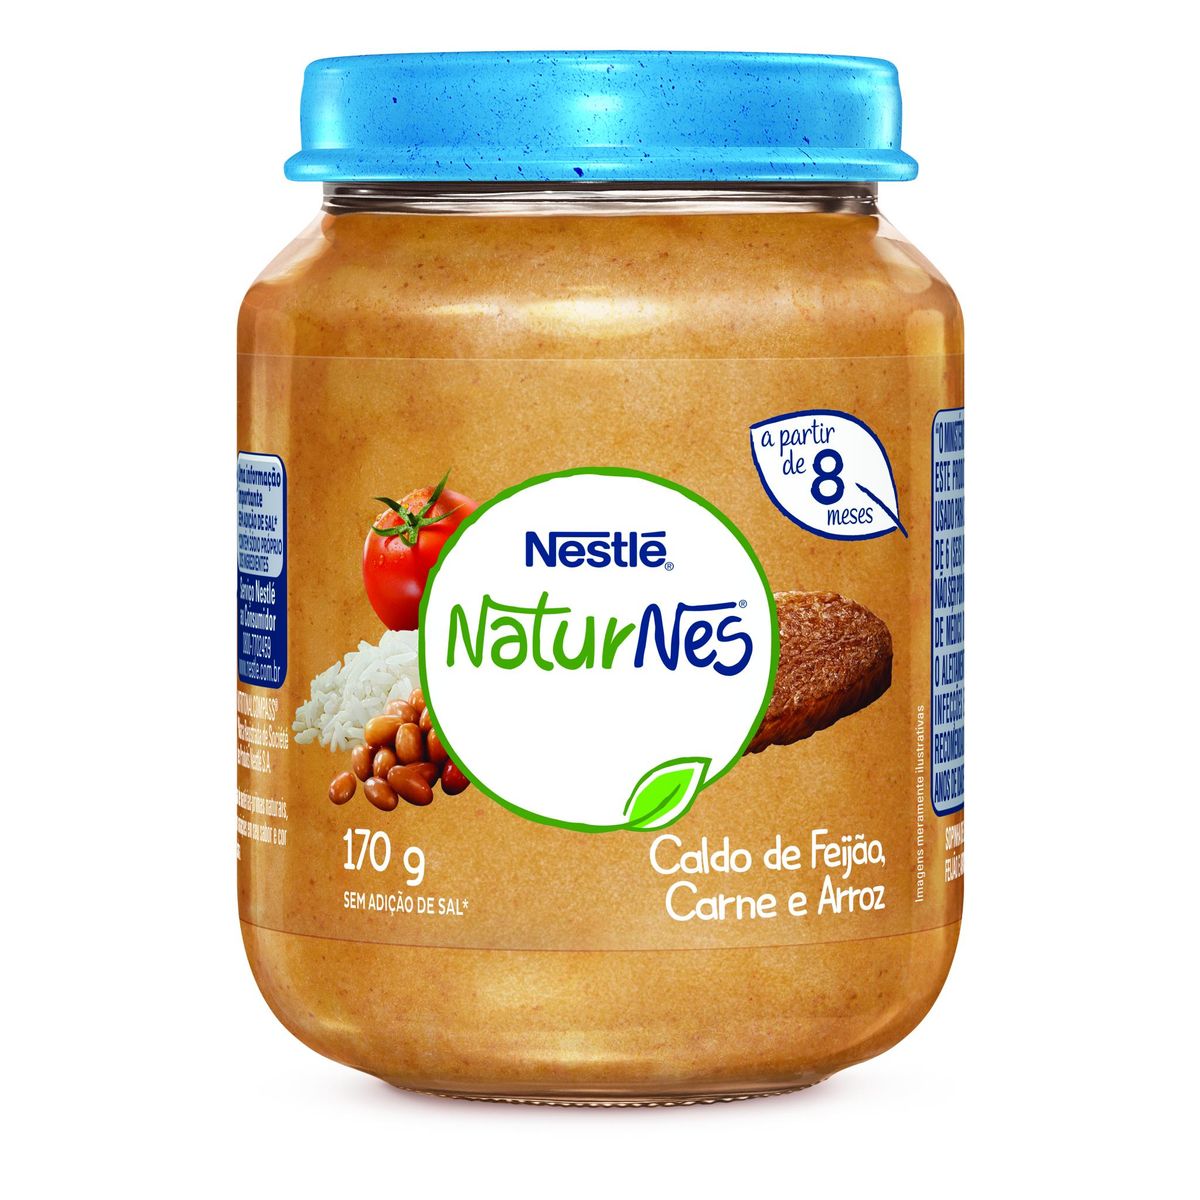 Papinha Nestlé Naturnes Caldo de Feijão, Carne e Arroz 170g image number 0